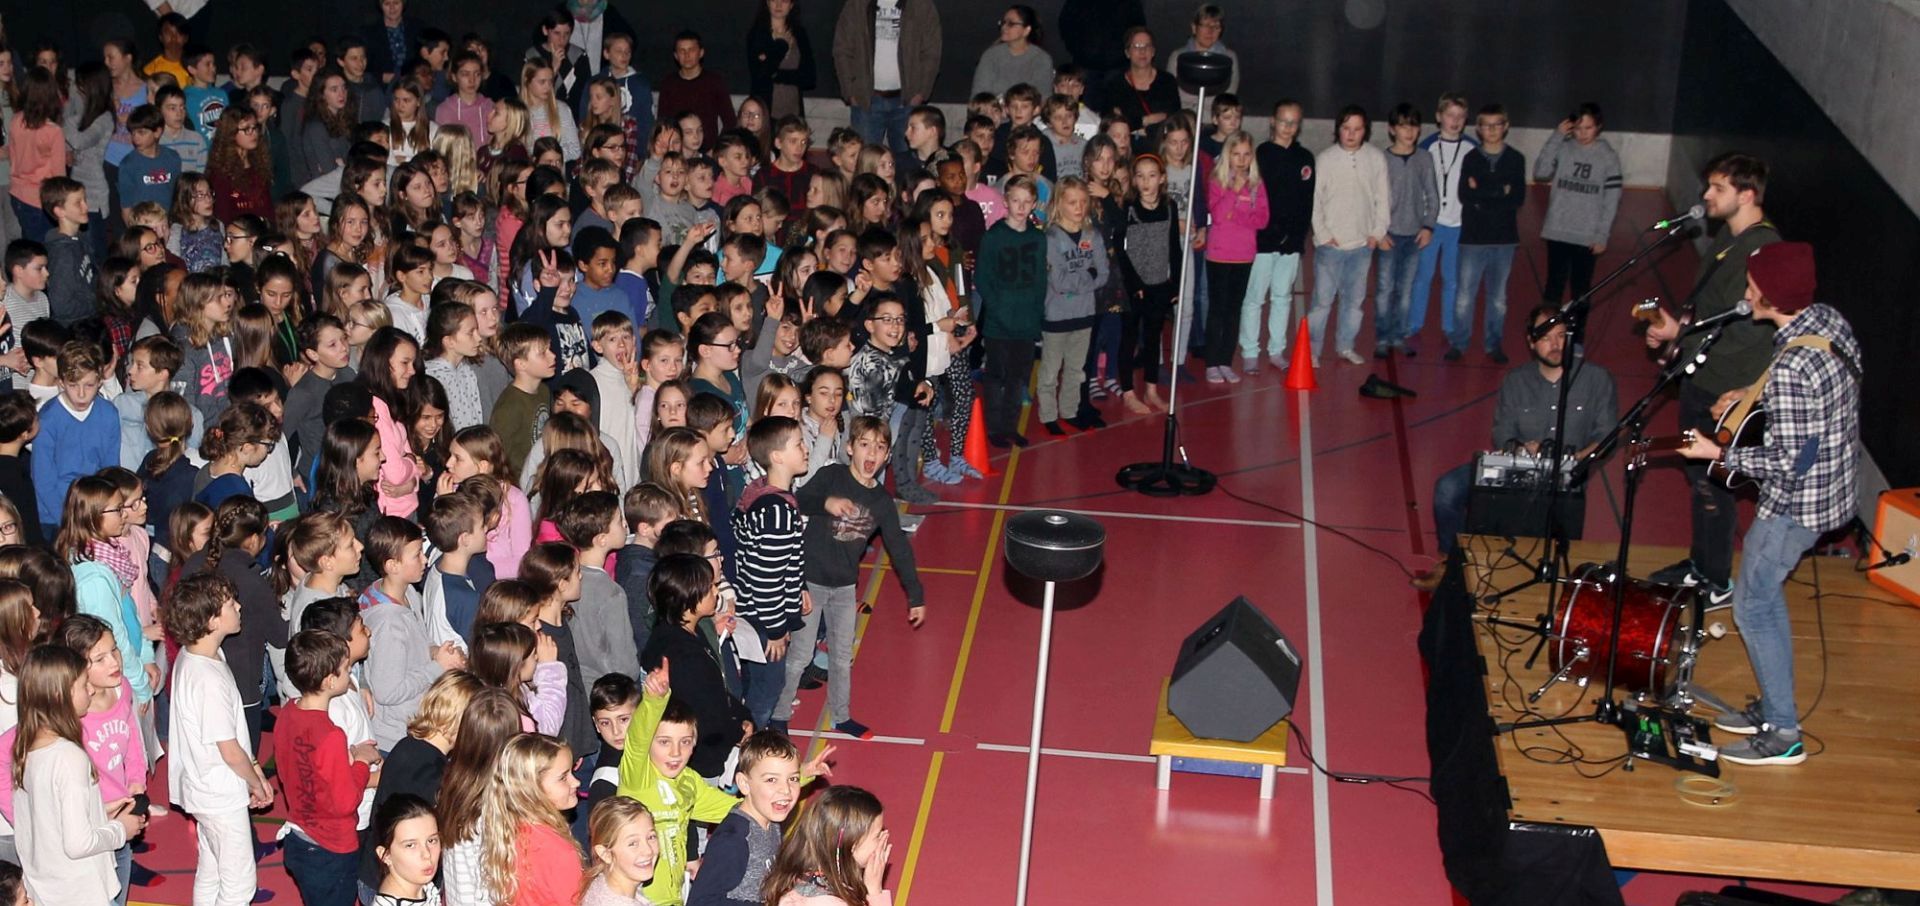 Schülerinnen und Schüler tanzen in einer Turnhalle, auf einer Bühne spielt eine Band